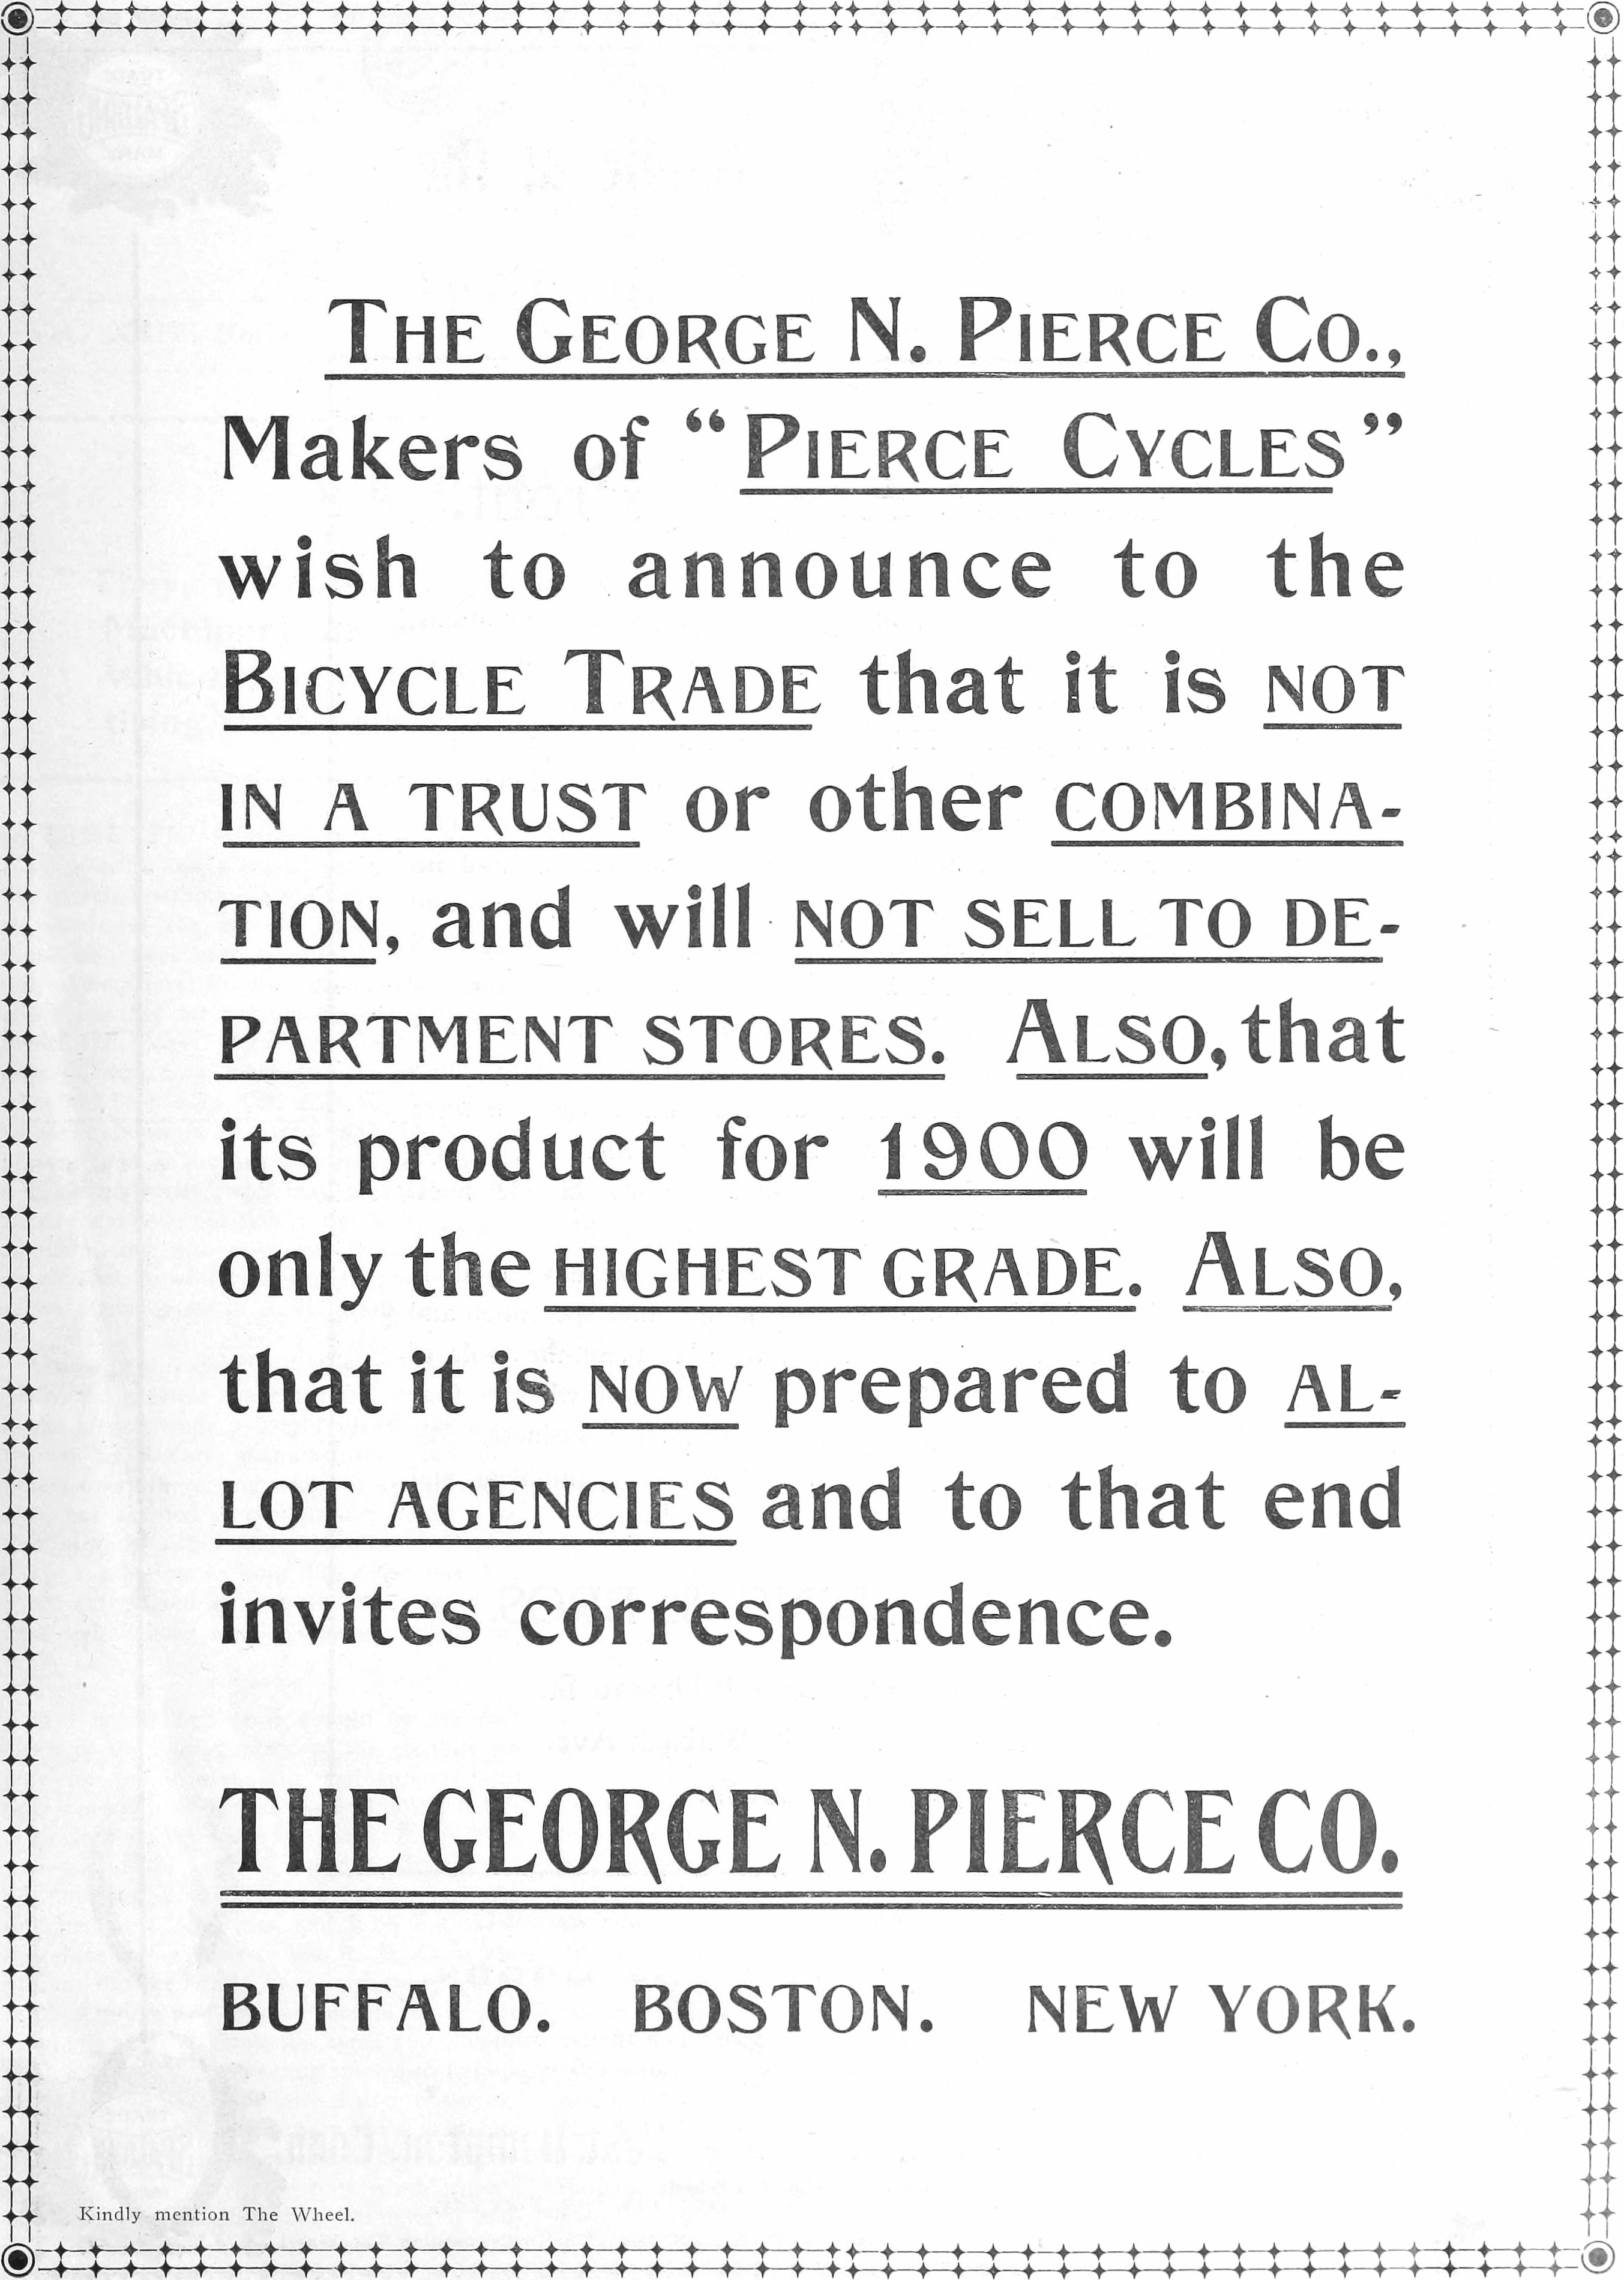 Pierce 1899 168.jpg